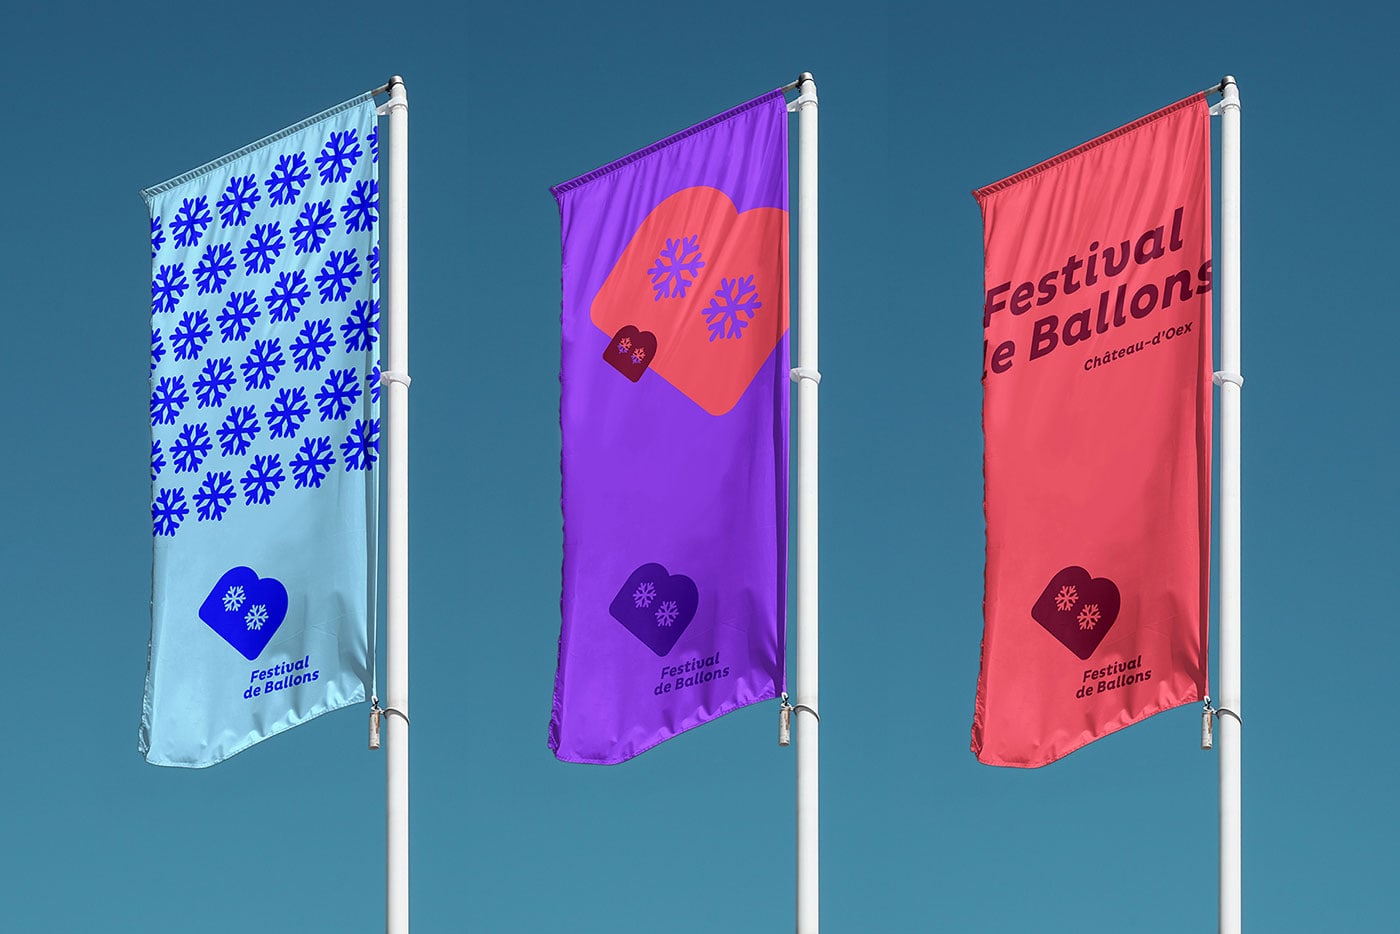 瑞士热气球节品牌概念设计